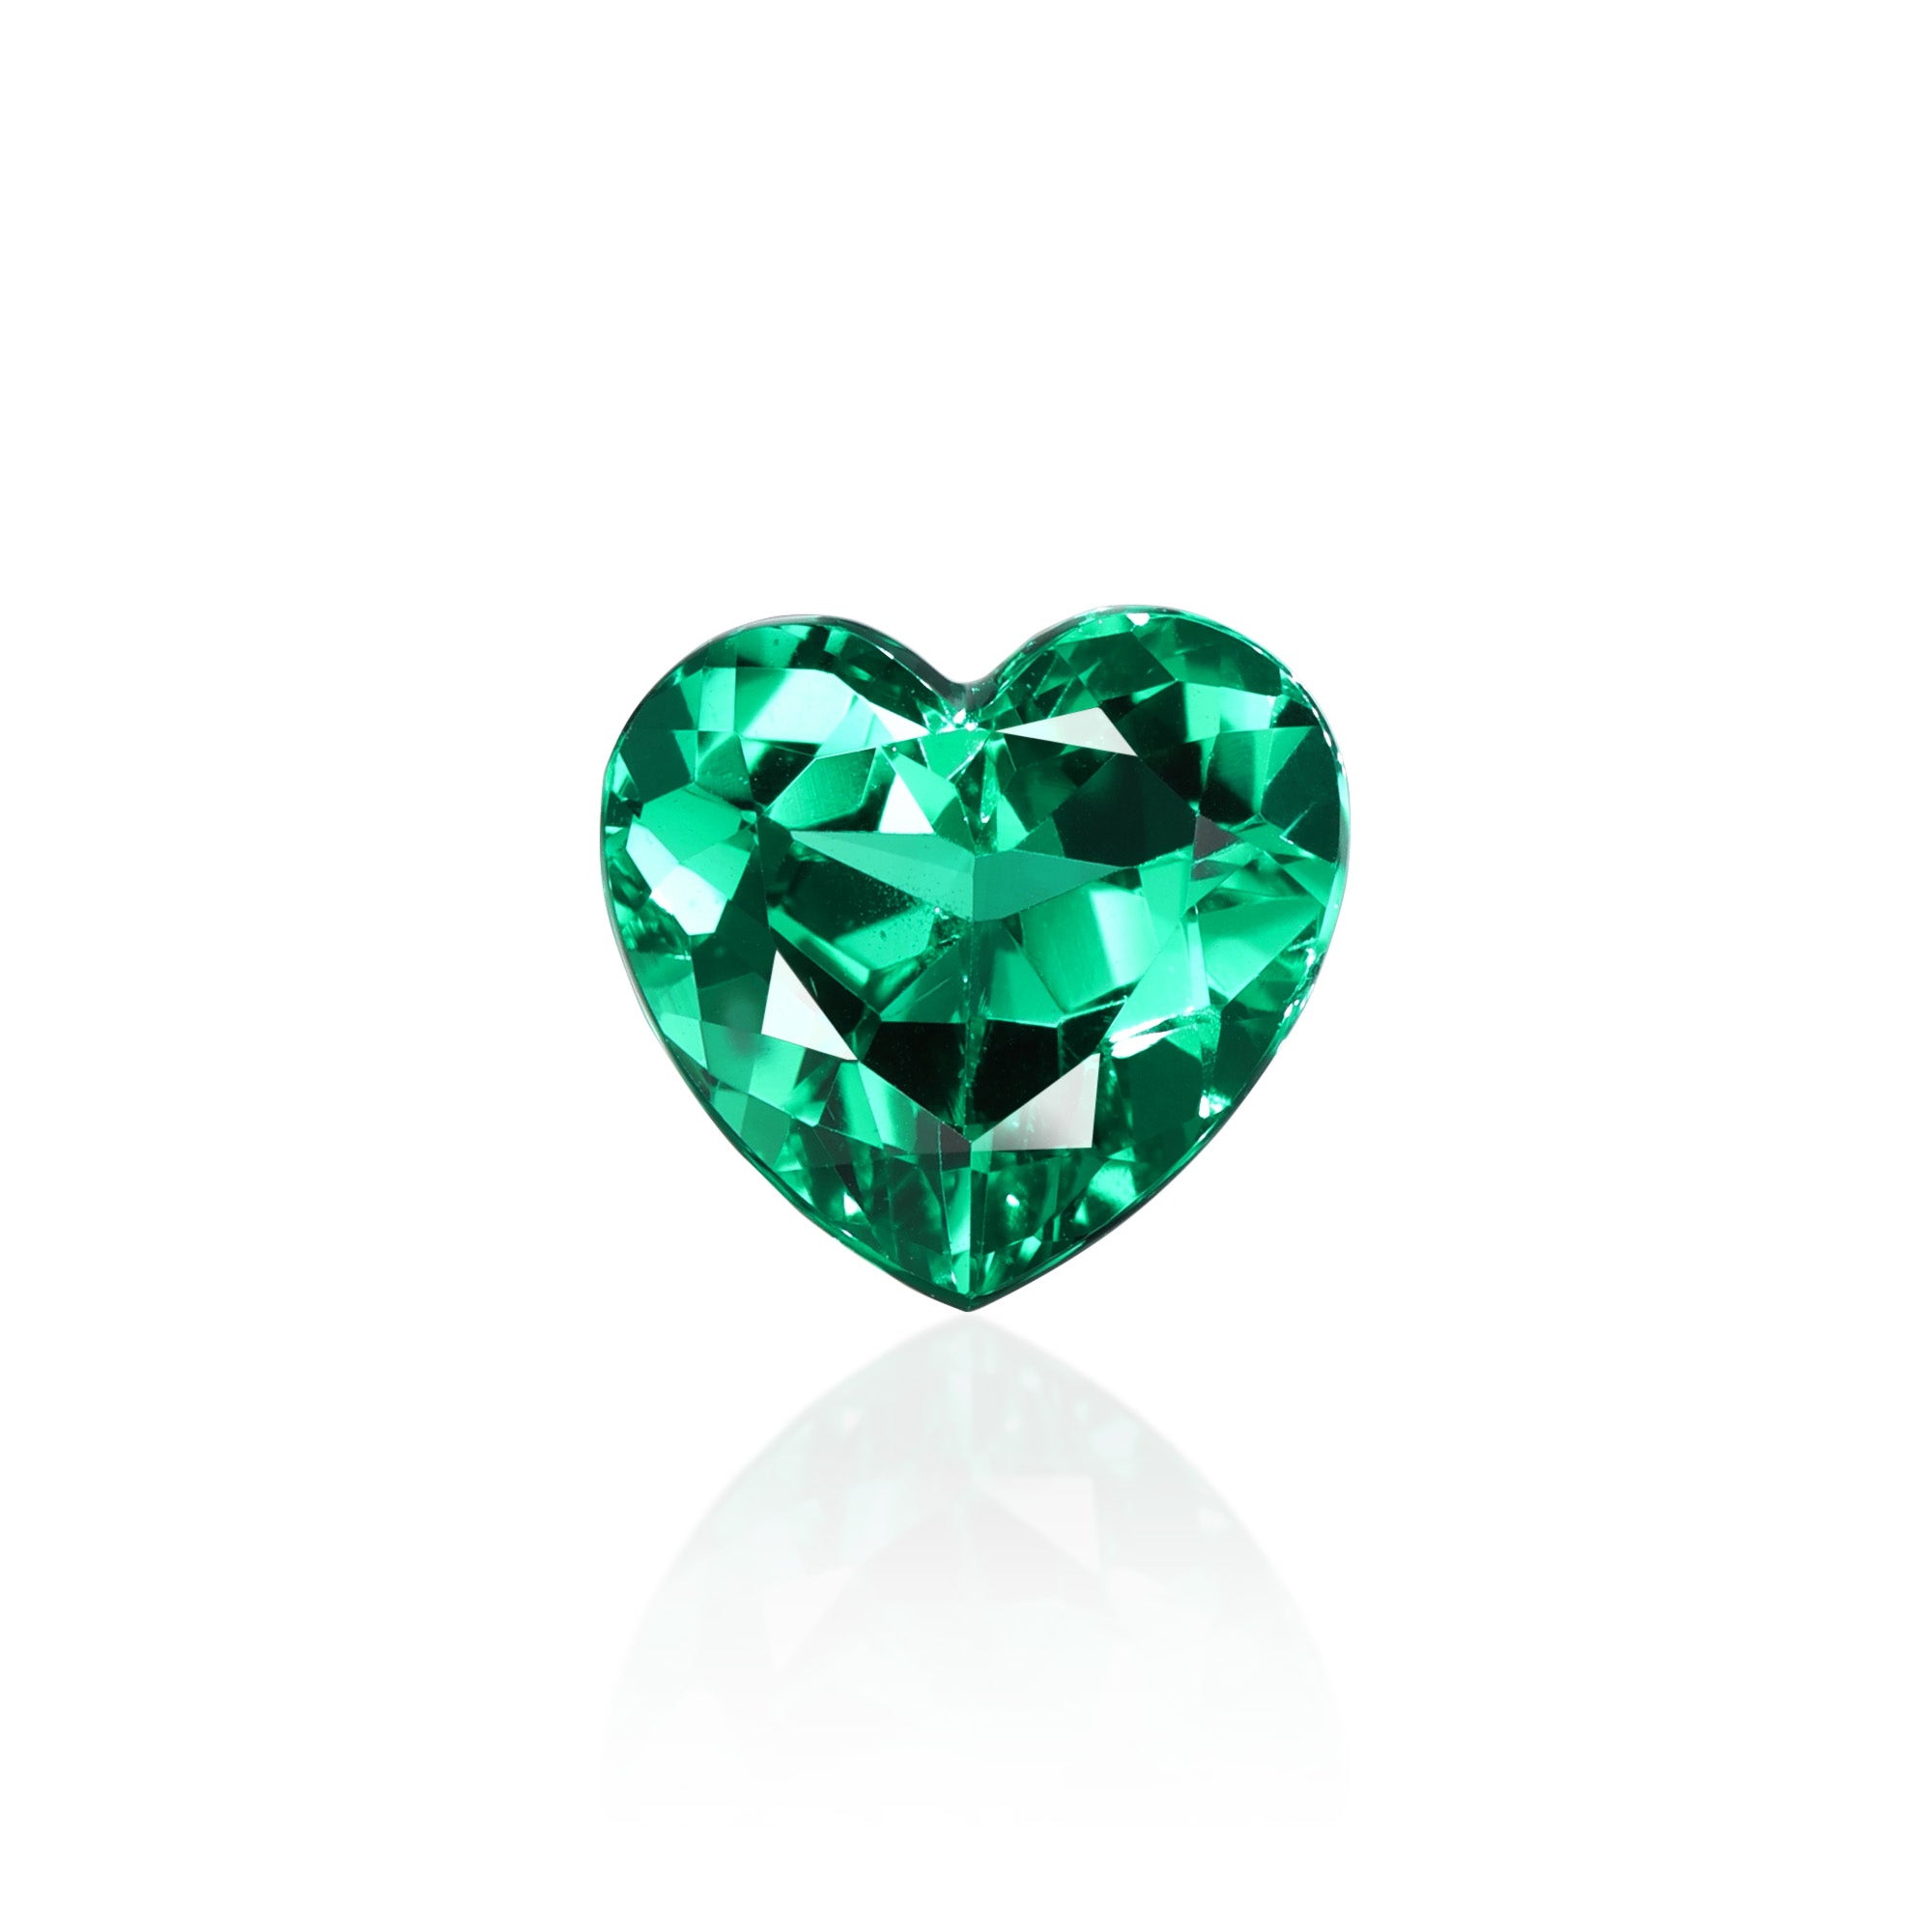 SSEF 1.312 ct Colombian “Non-oil” Heart Emerald